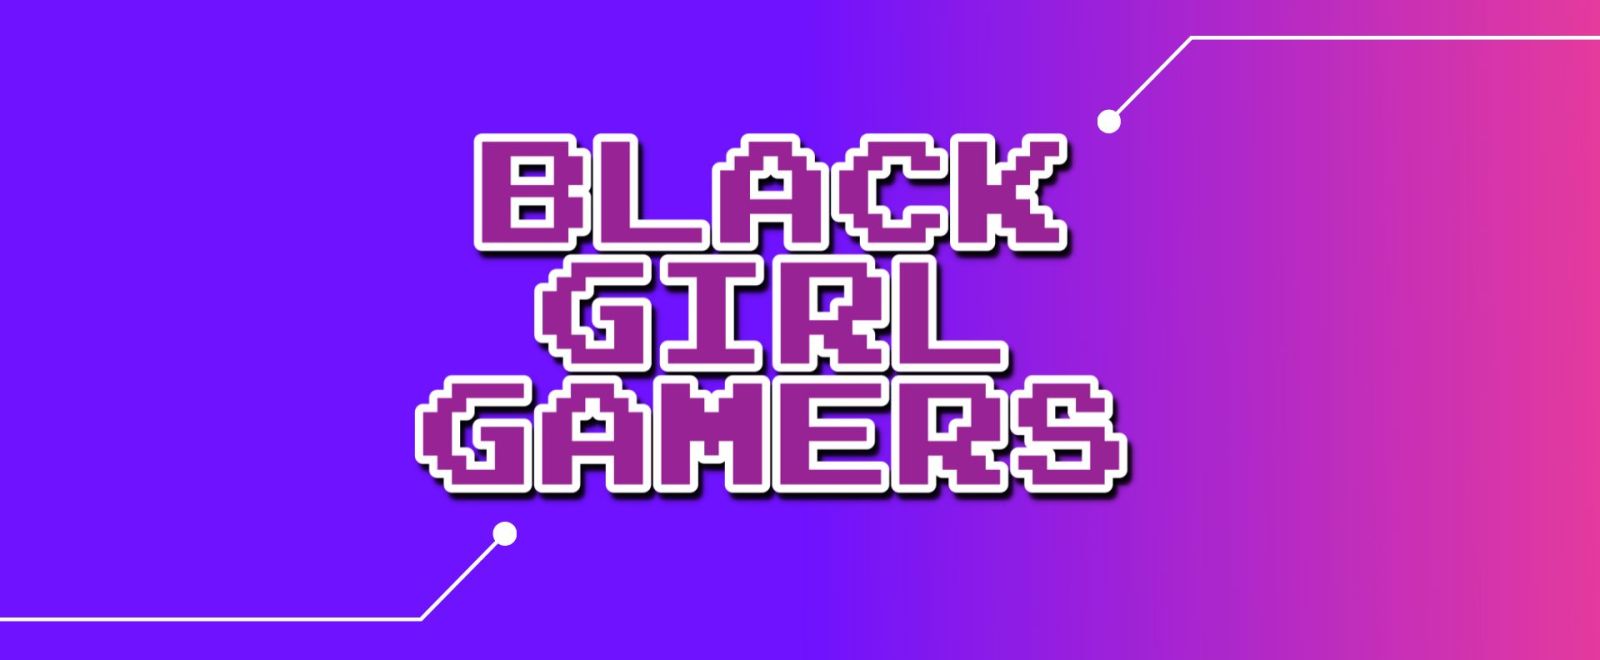 black-girl-gamers